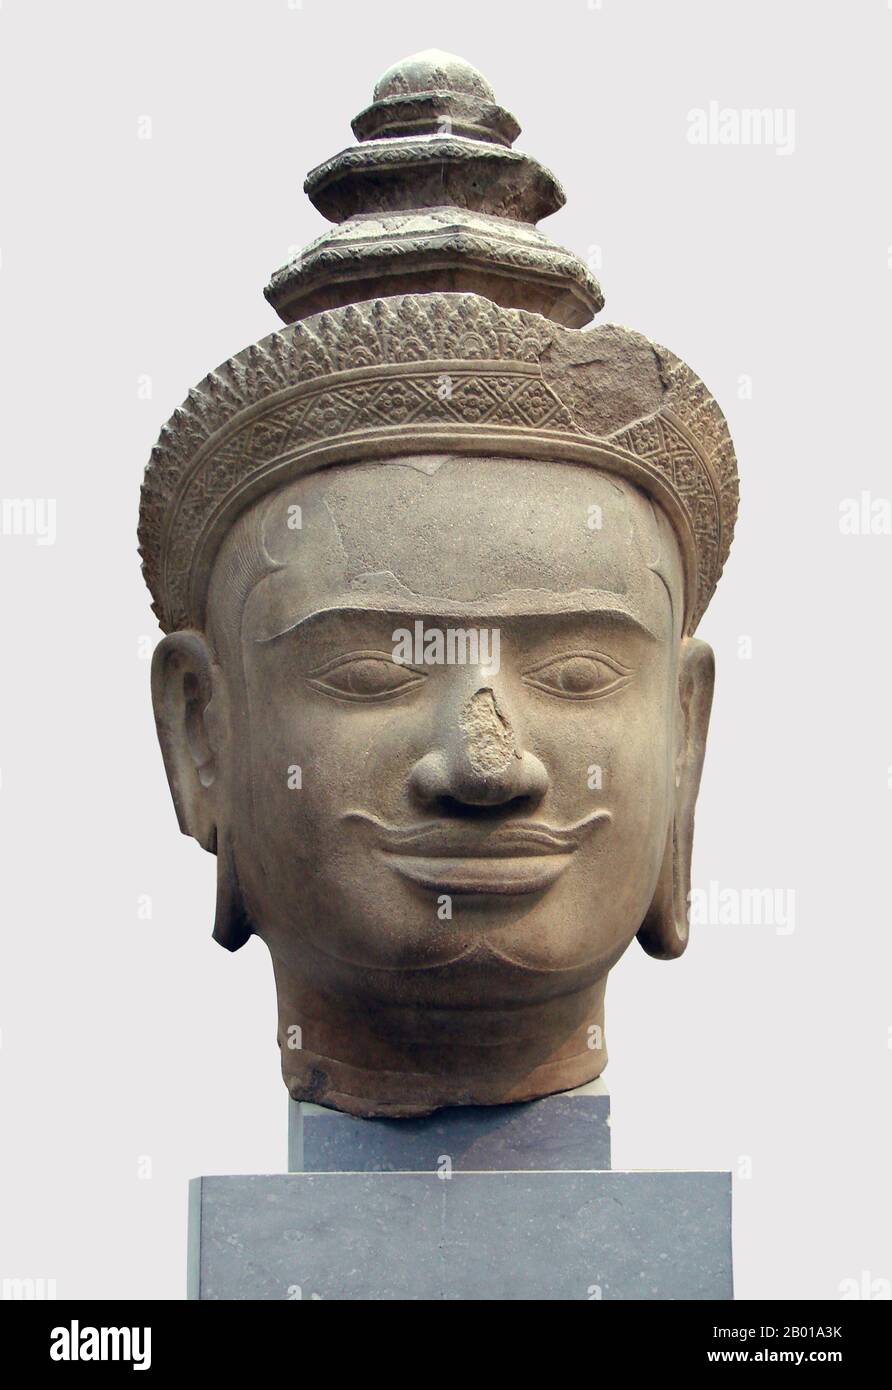 Kambodscha: Vishnu-Chef aus Phnom Bok, Siem Reap, jetzt im Musée Guimet, Paris, 9.-10. Jahrhundert. Phnom Bok ist ein Hügel im Nordosten der Ostbaray in Kambodscha, auf dem ein prasat (Tempel) mit dem gleichen Namen errichtet wurde. Es handelt sich um eine "Trilogie der Berge", von denen jeder einen Tempel mit ähnlichem Layout hat. Die Entstehung des Tempels wird der Herrschaft von Yasovarman I. (889–910) zwischen dem 9.. Und 10.. Jahrhundert zugeschrieben und wurde gegründet, nachdem er seine Hauptstadt nach Angkor verlegte und ihn Yasodharapura nannte. Die beiden anderen Schwestentempel sind Phnom Bakheng und Phnom Krom. Stockfoto